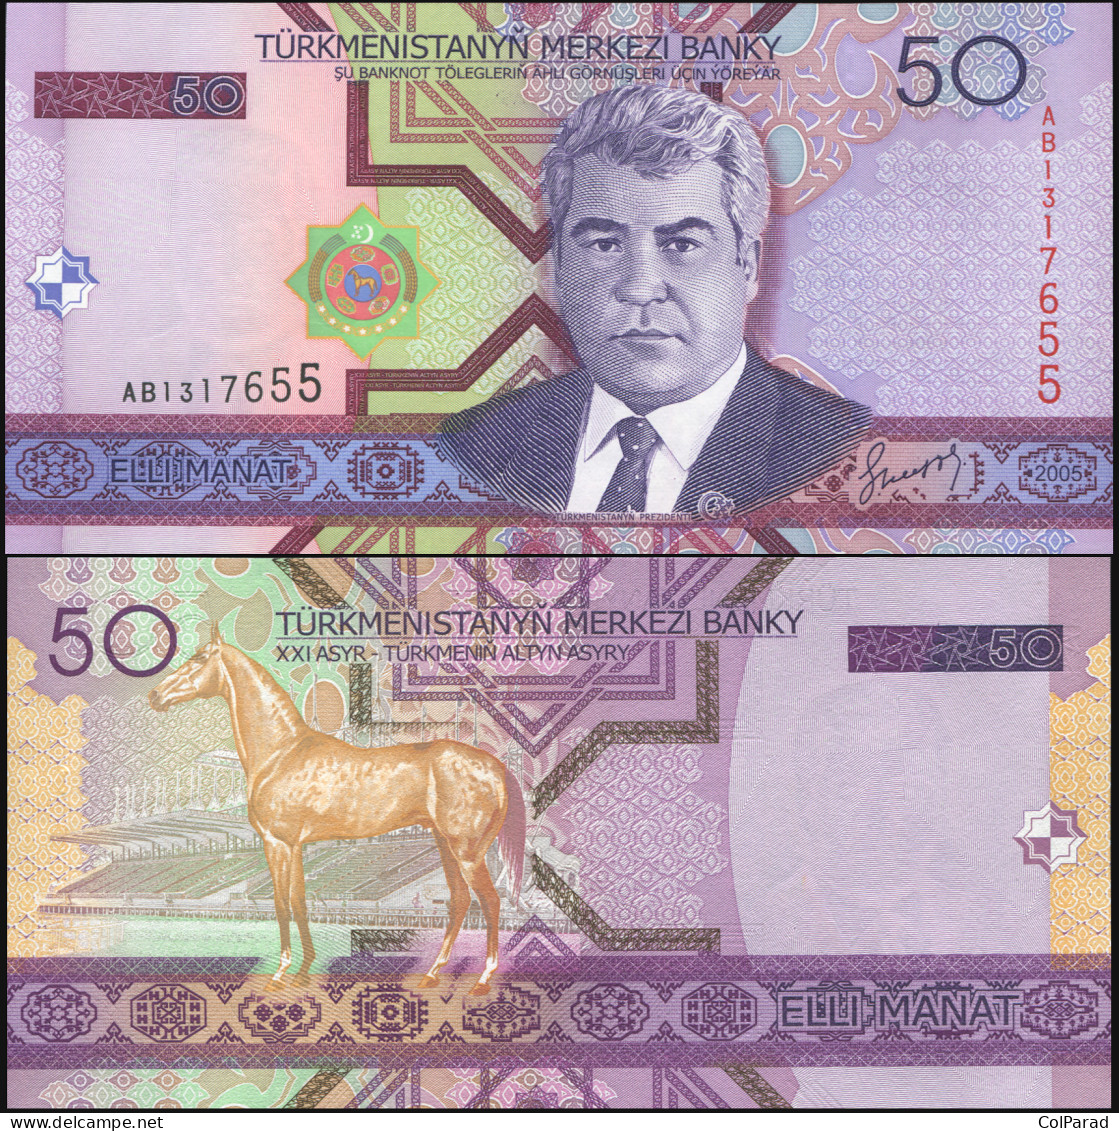 TURKMENISTAN 50 MANAT - 2005 - Unc - P.17a Paper Banknote - Turkmenistán